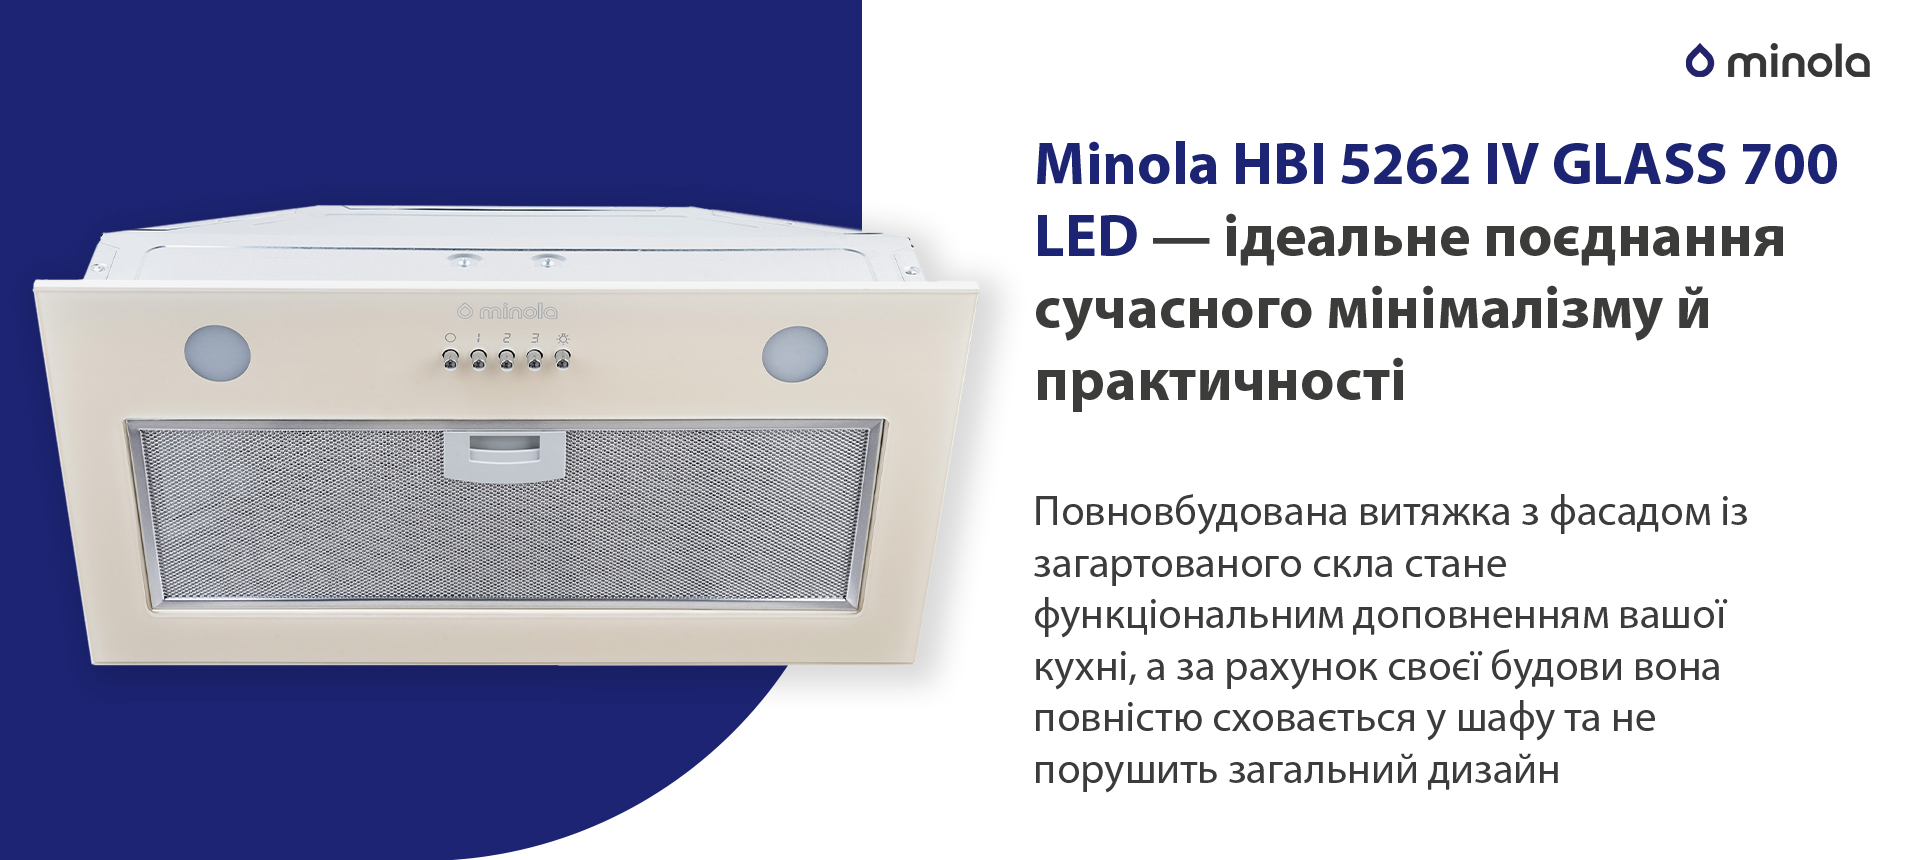 Minola HBI 5262 IV GLASS 700 LED в магазине в Киеве - фото 10